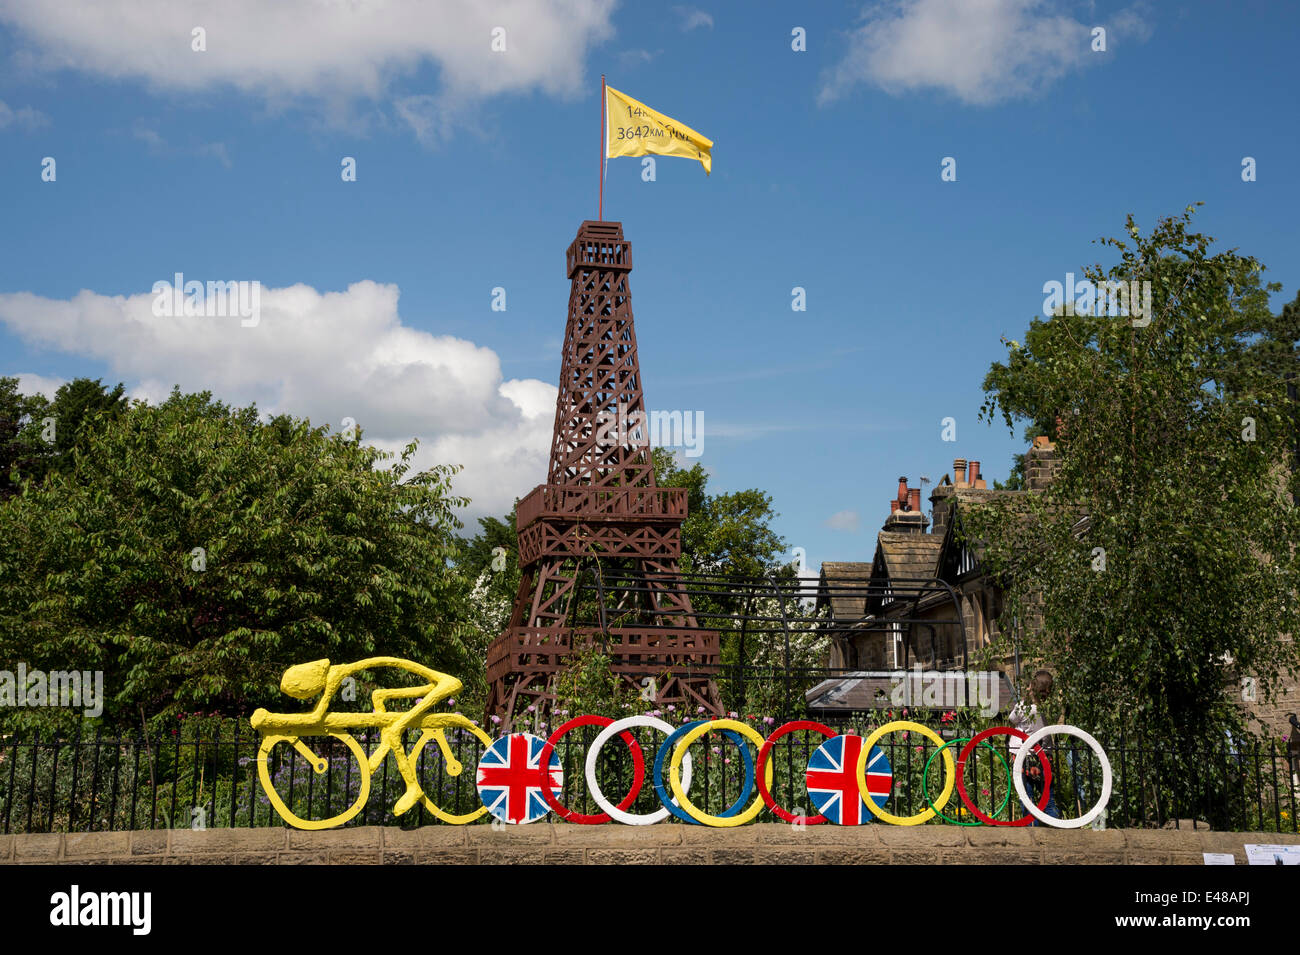 Sous le ciel bleu, la Tour Eiffel en bois avec un drapeau jaune et de modèle fixe cycliste de jardin clôture, construit pour célébrer le tour dans le Yorkshire - Burley-In-Wharfedale, England, UK. Banque D'Images